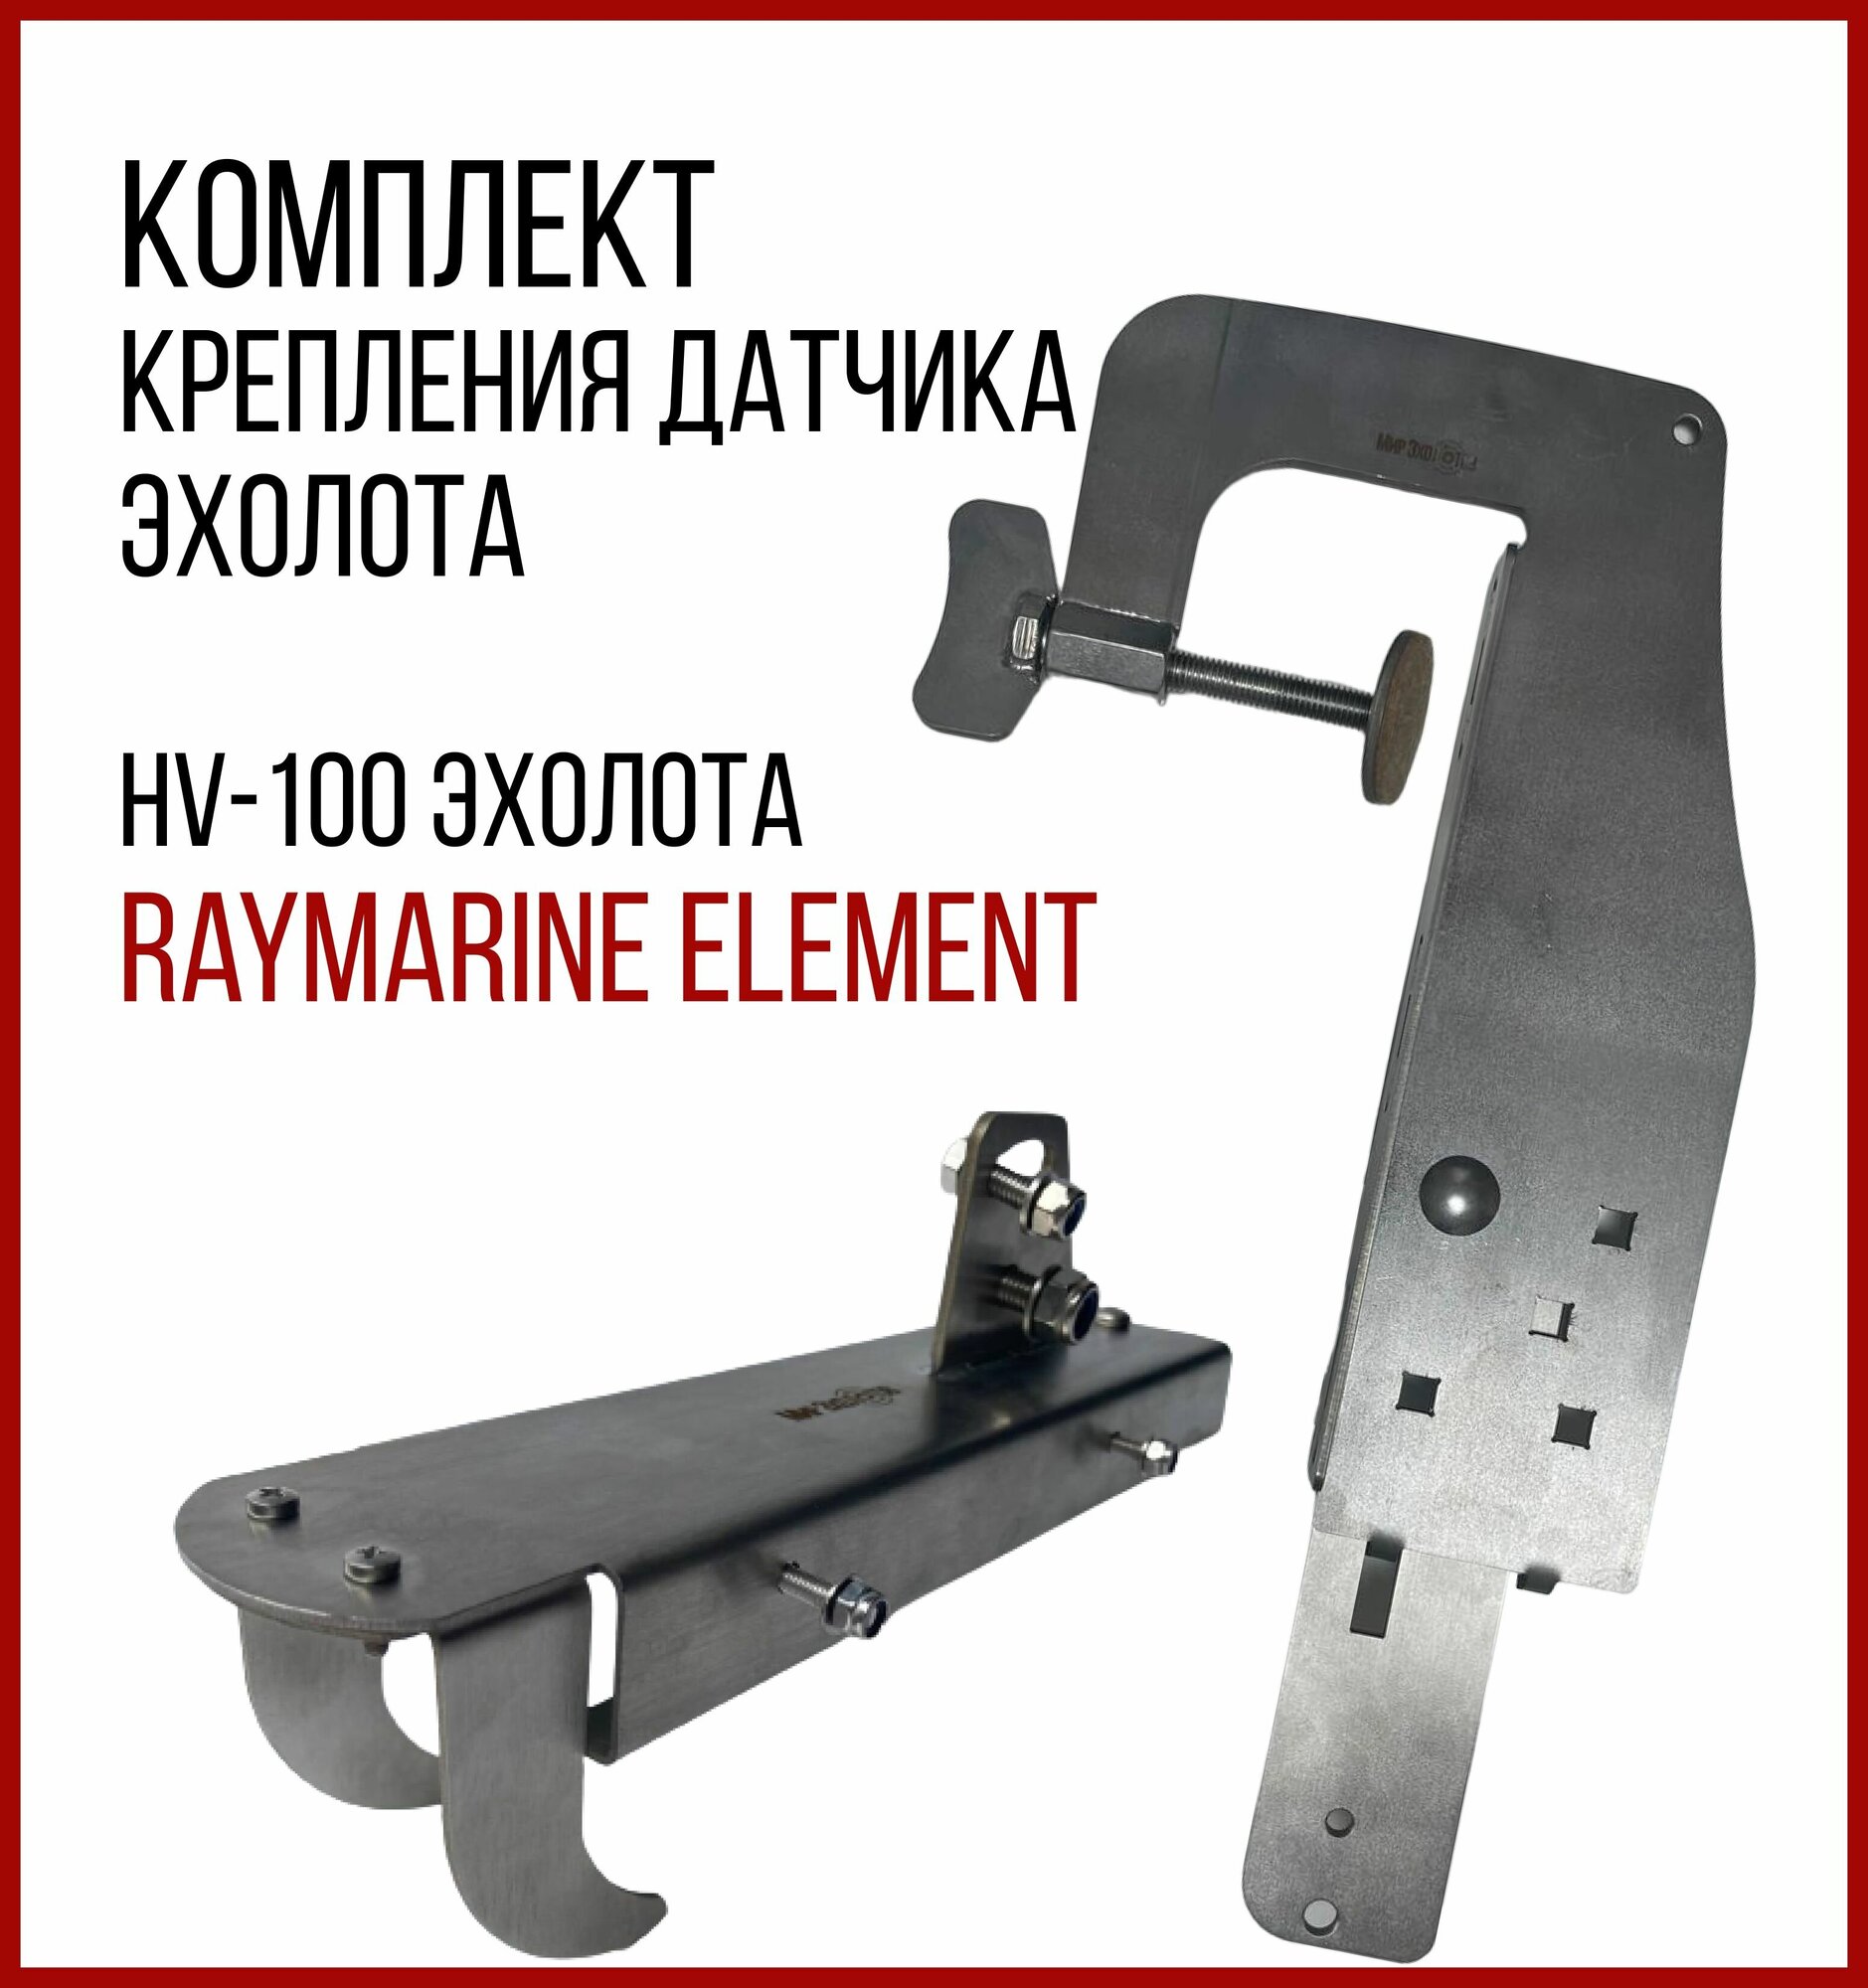 Комплект крепление для датчика HV-100 эхолота Raymarine ELEMENT+Струбцина SKD010/kd3100